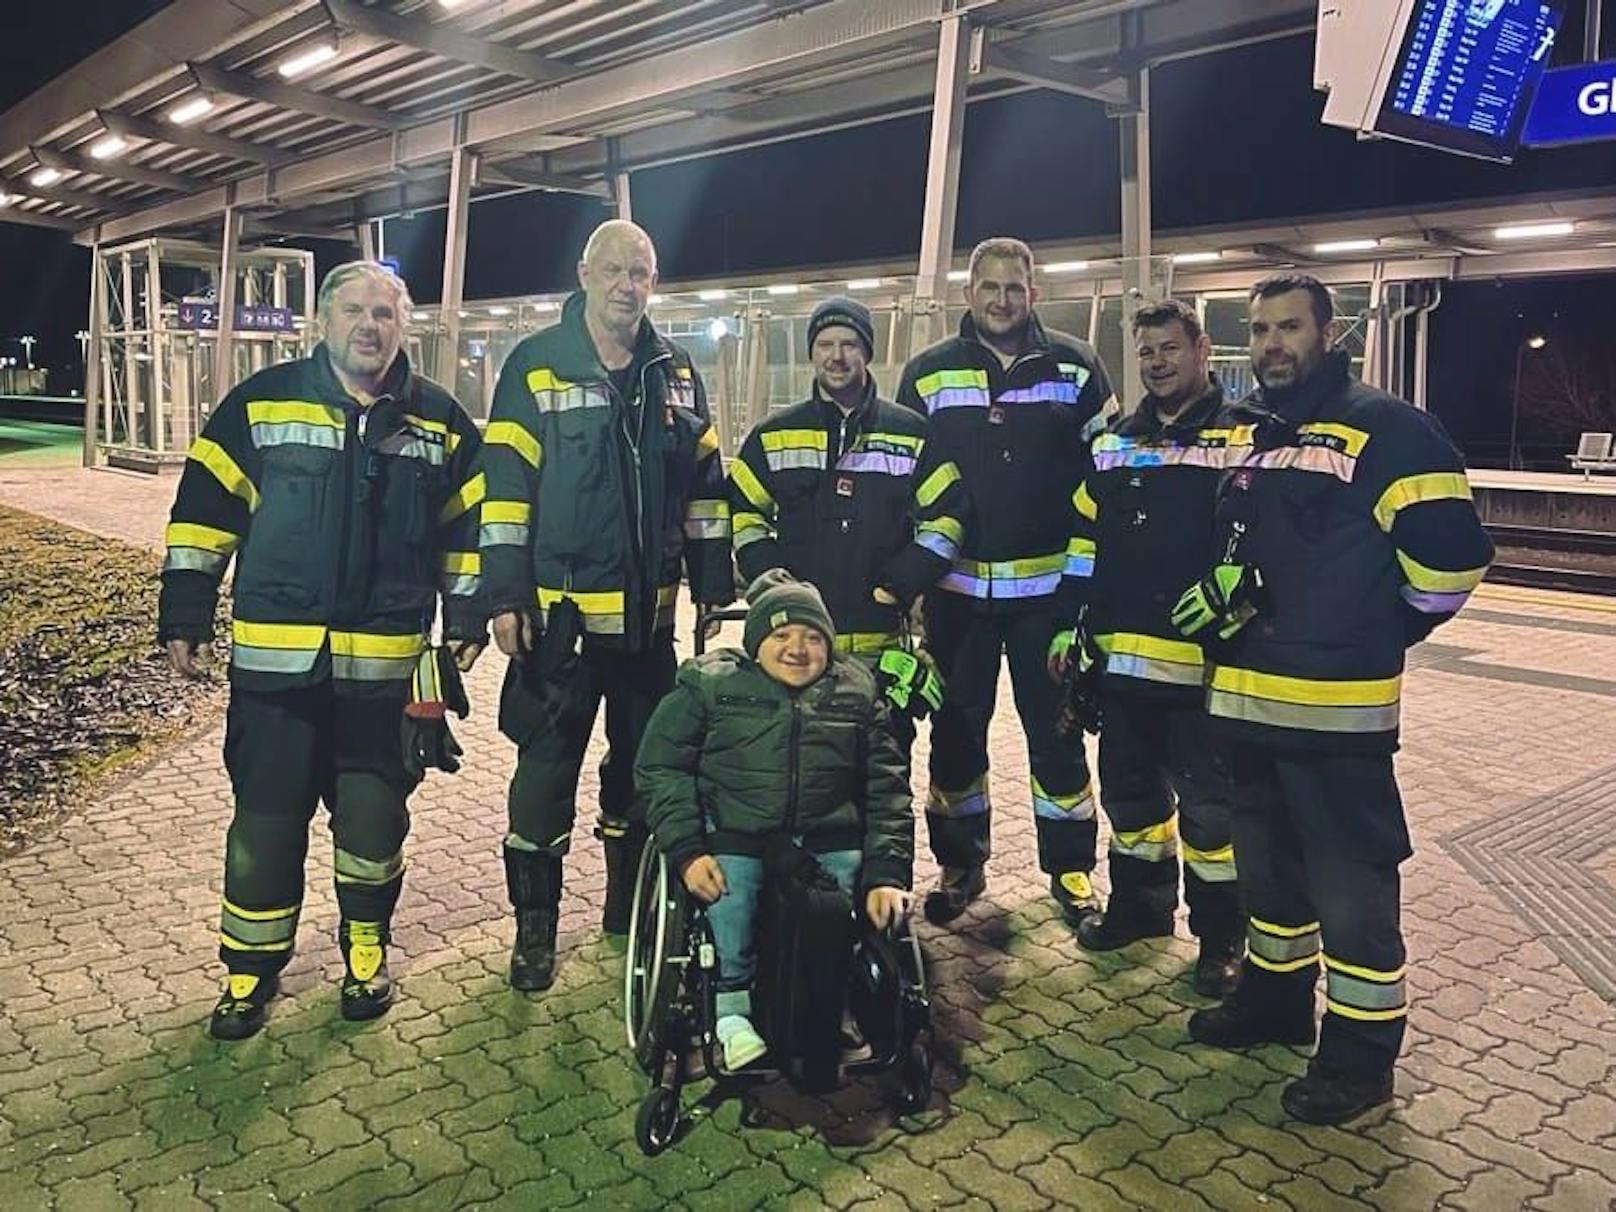 Luca Kielhauser strandete am Bahnsteig, die Freiwillige Feuerwehr Gleisdorf half.